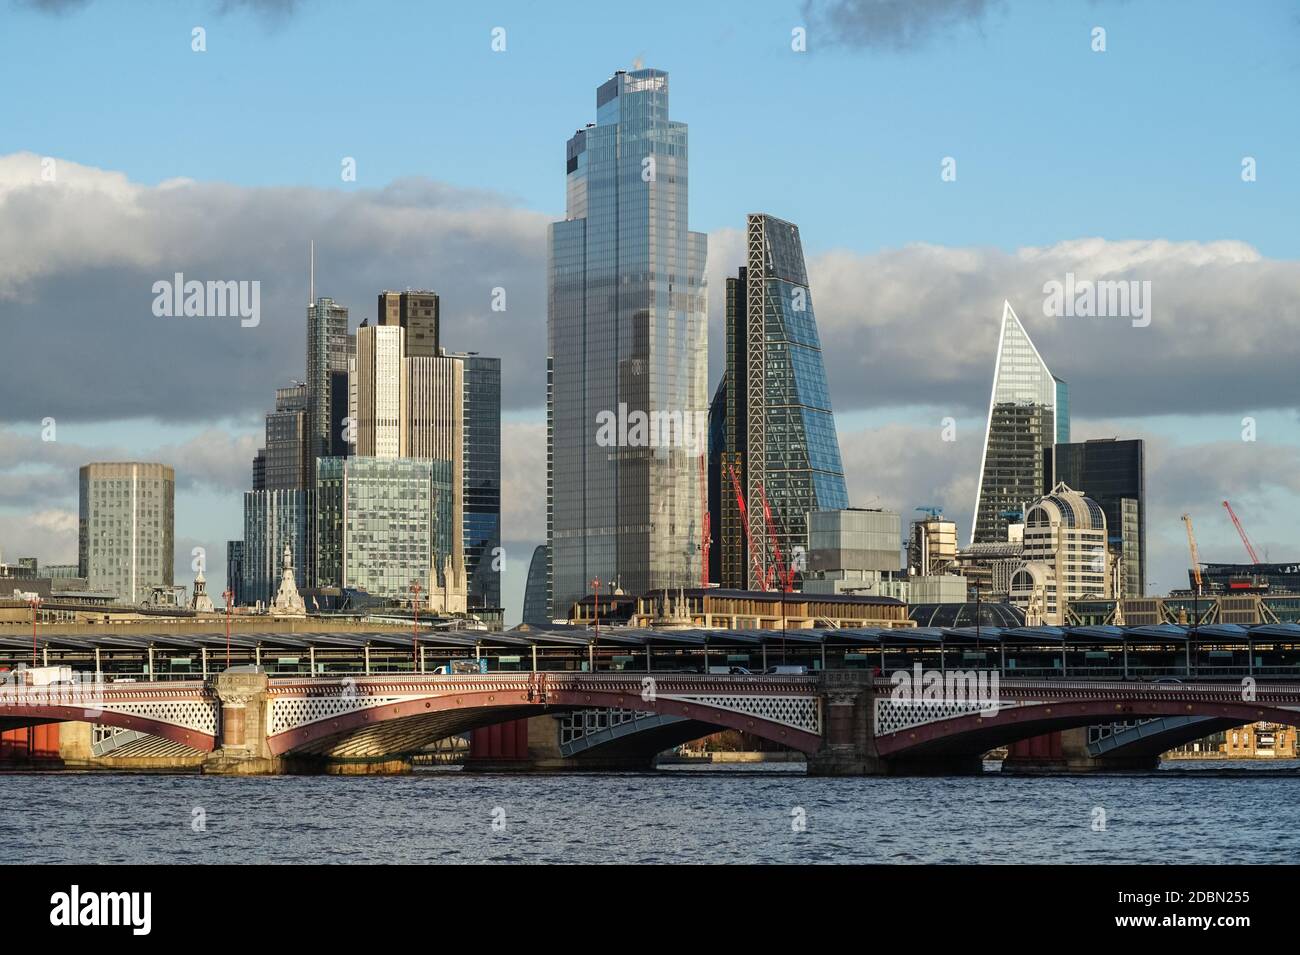 Gratte-ciels dans la City de Londres, Angleterre Royaume-Uni Banque D'Images